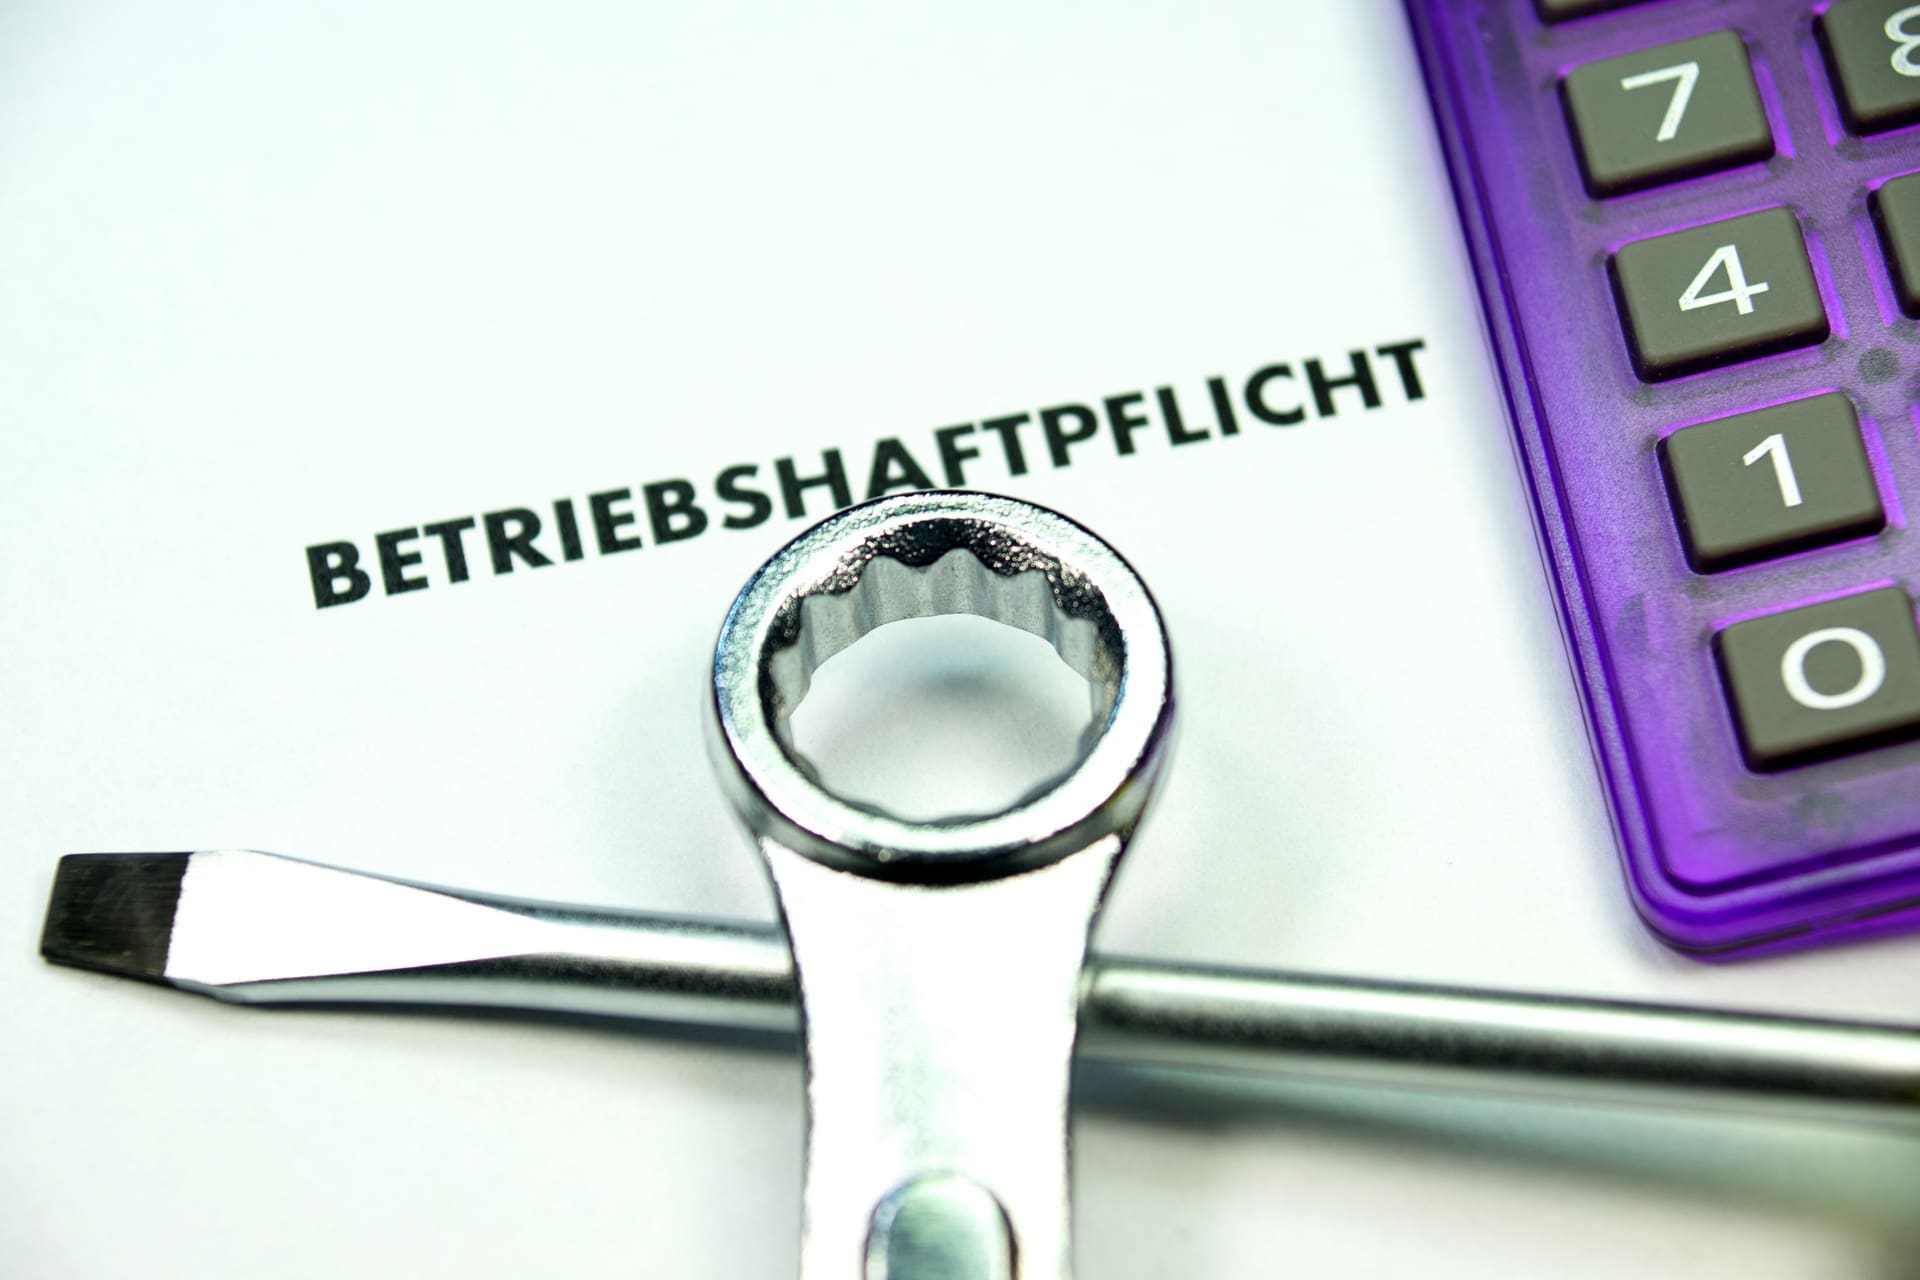 Betriebshaftpflicht: Betriebshaftpflichtversicherung zahlt nicht - und nun?! (© studio v-zwoelf / stock.adobe.com)